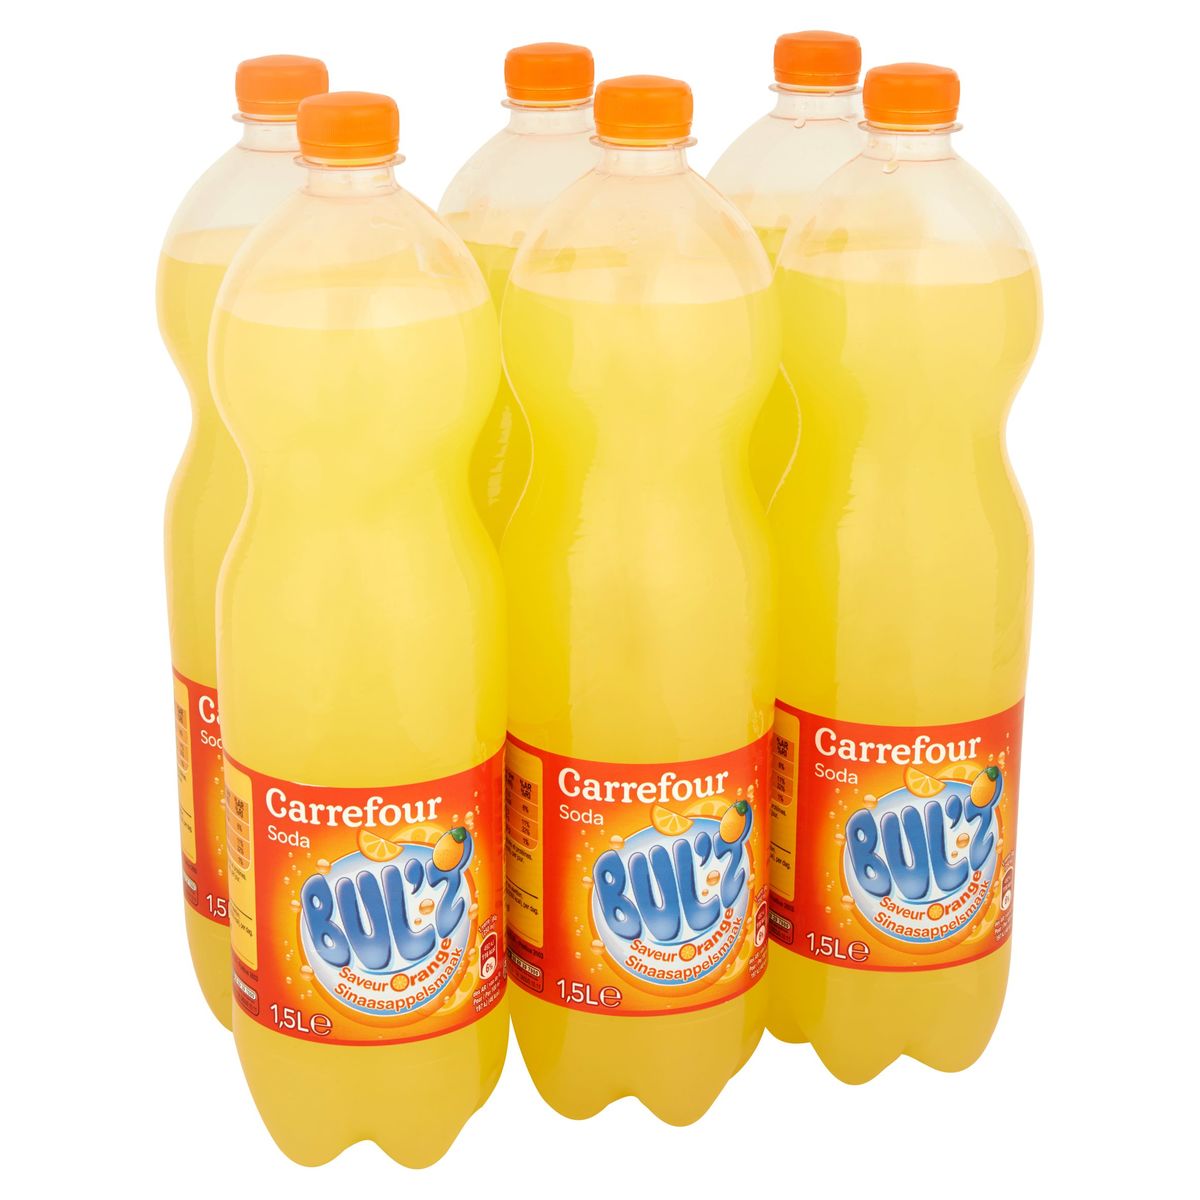 Carrefour Bul'z Soda Saveur Orange 6 x 1.5 L